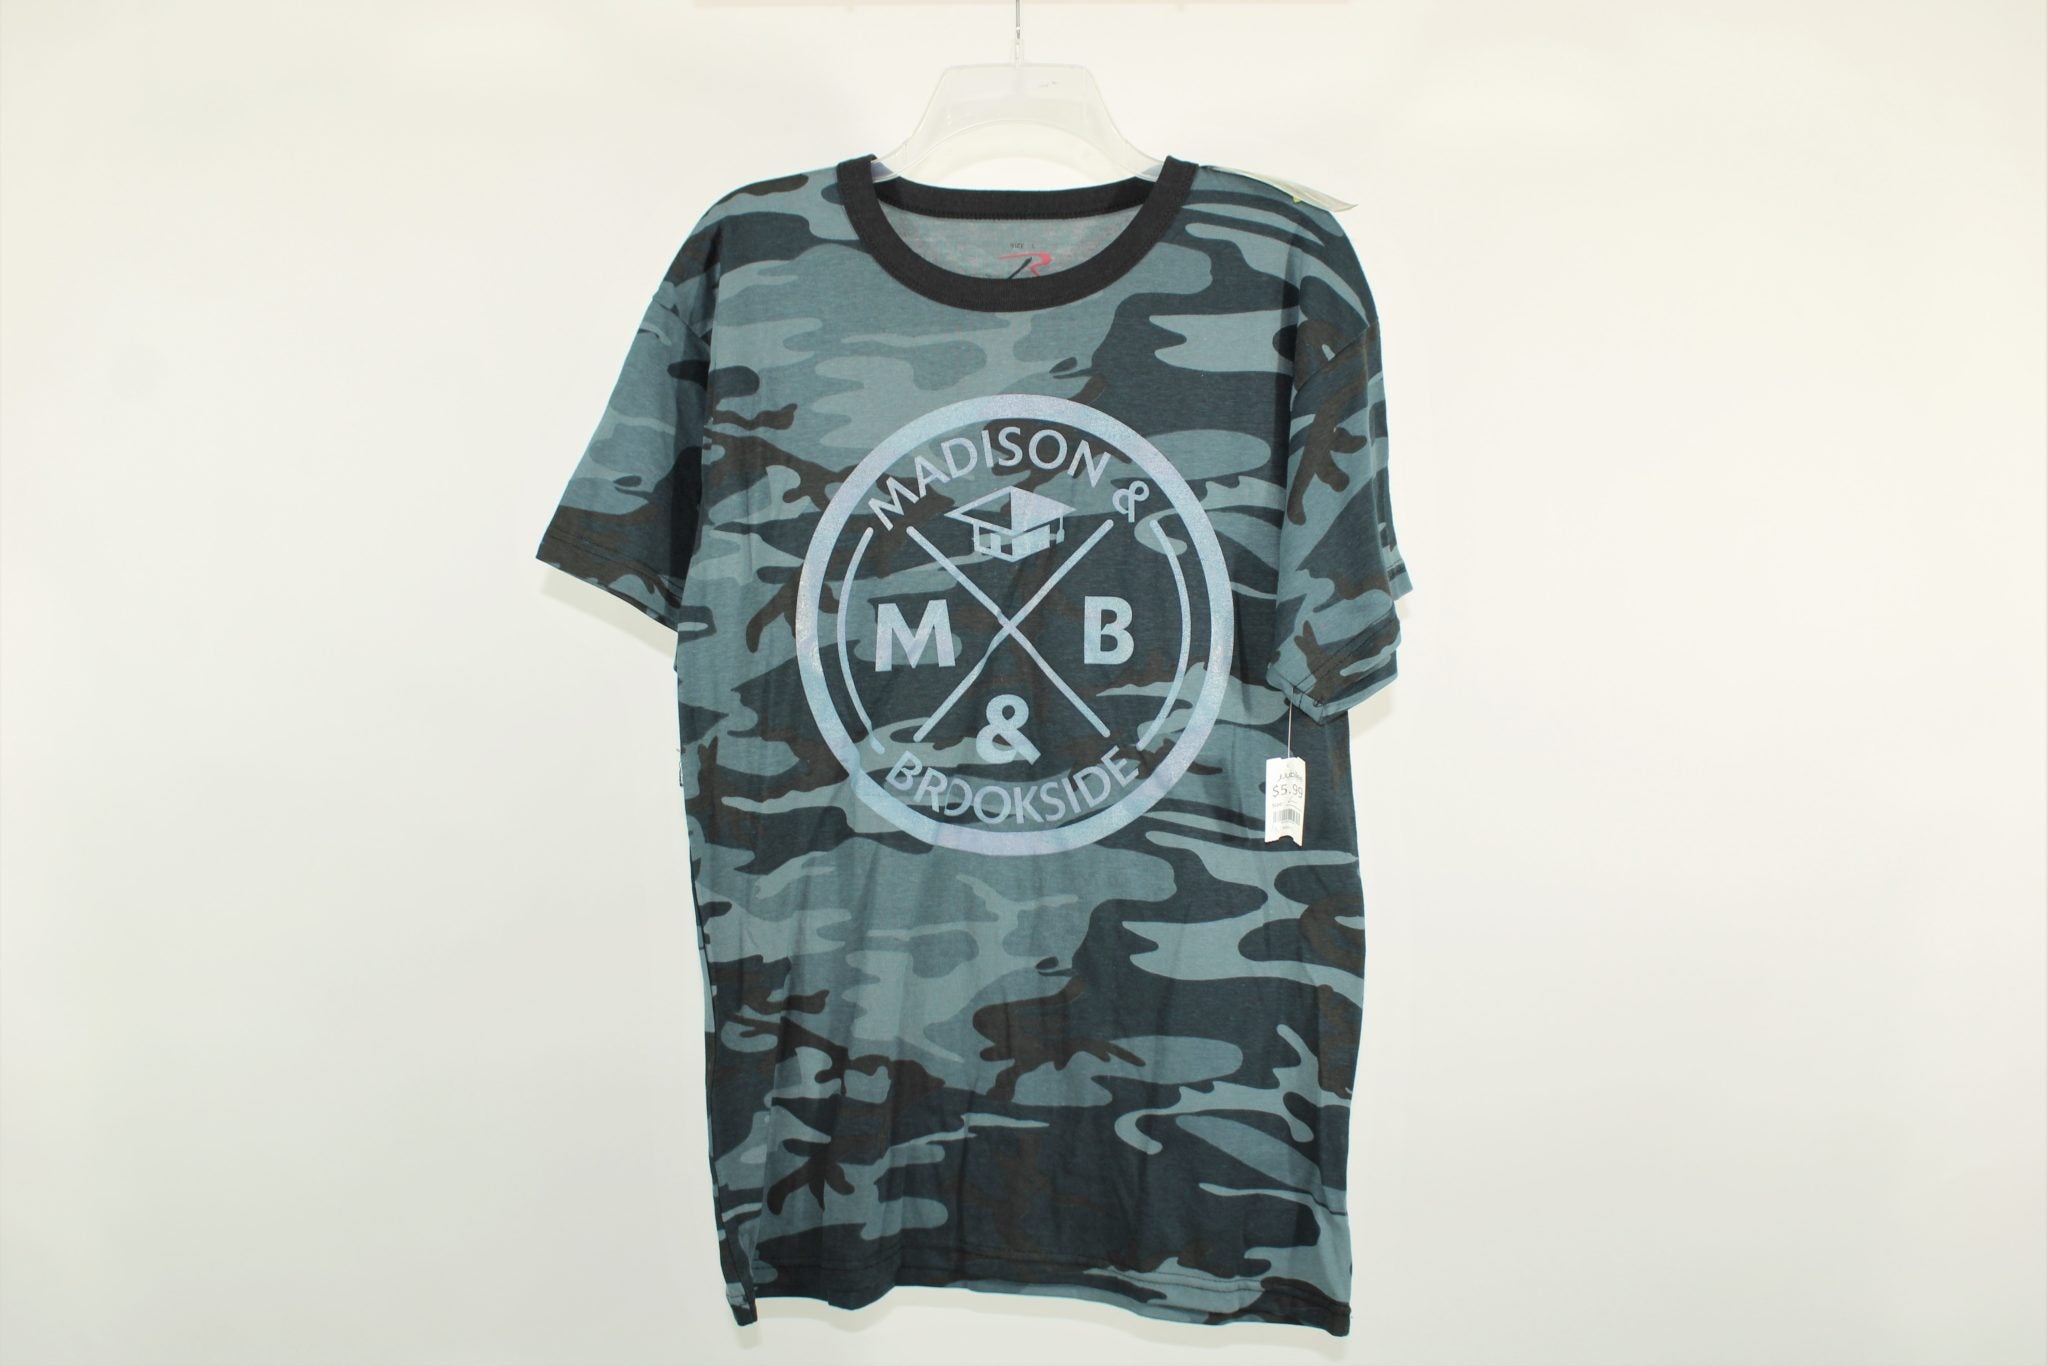 NEW Rothco Madison & Brookside Camo Shirt | L